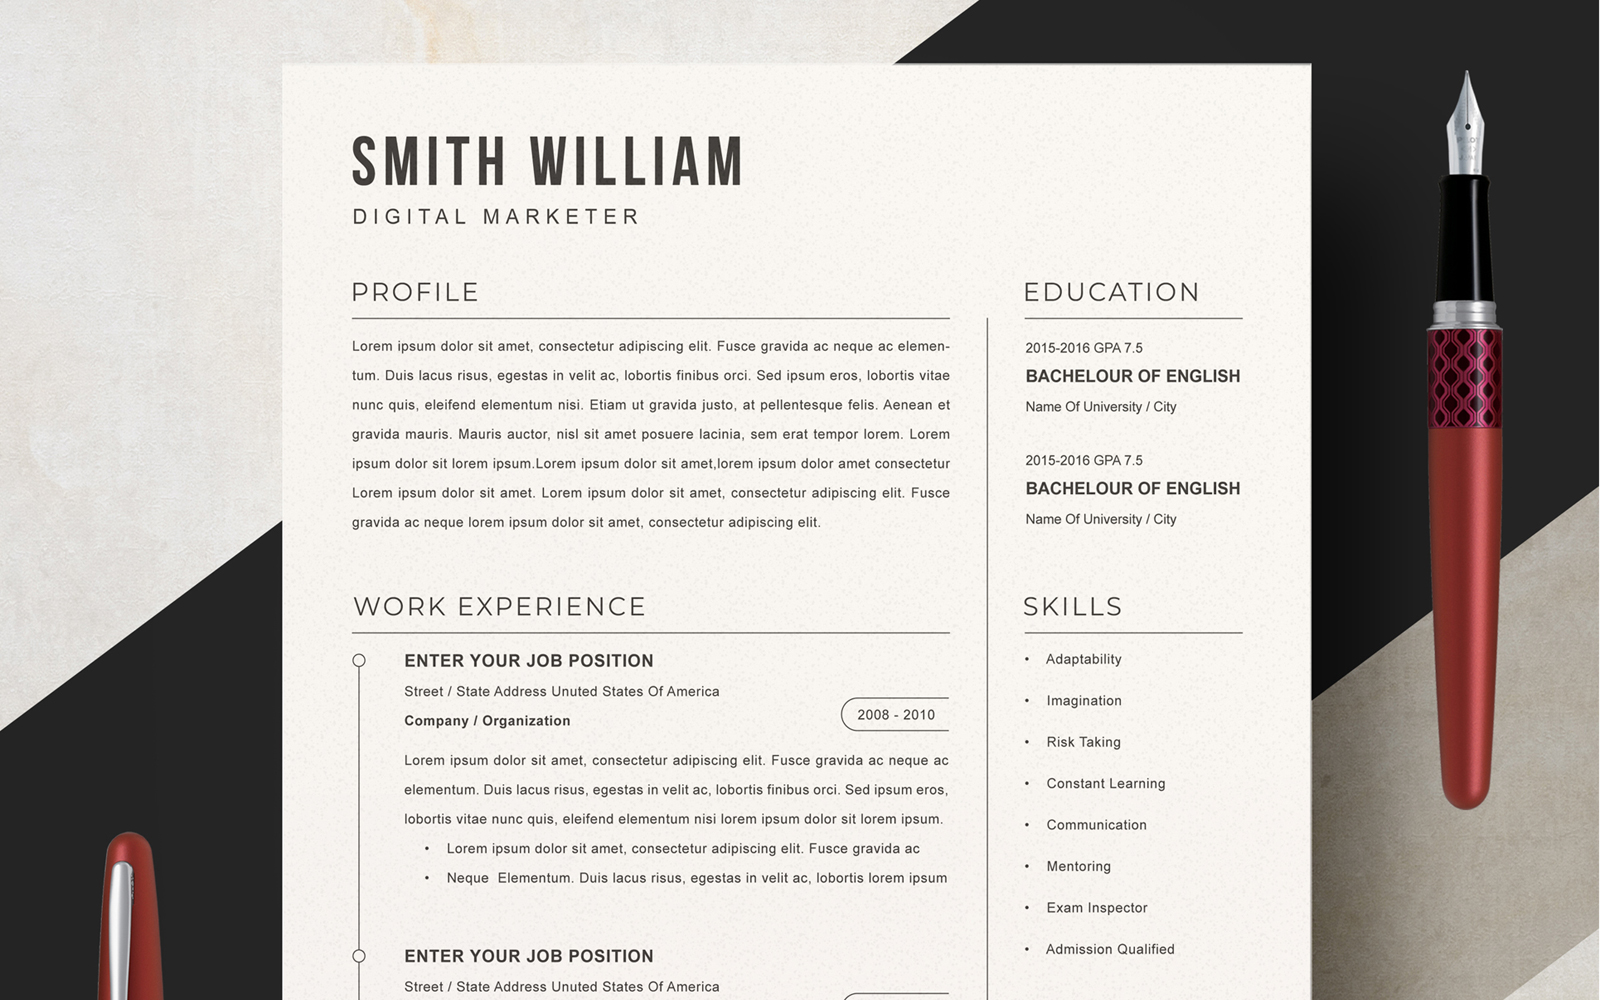 Smith William / Professional Resume